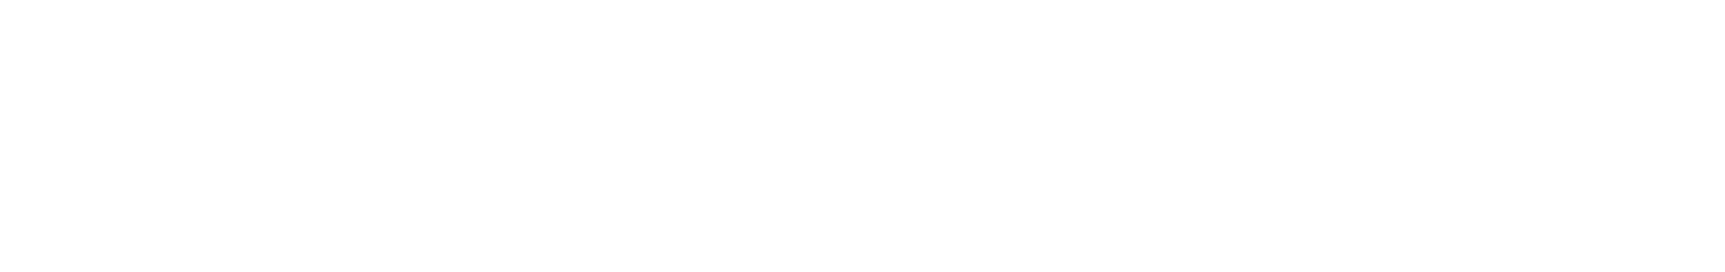 Vonovia logo large for dark backgrounds (transparent PNG)